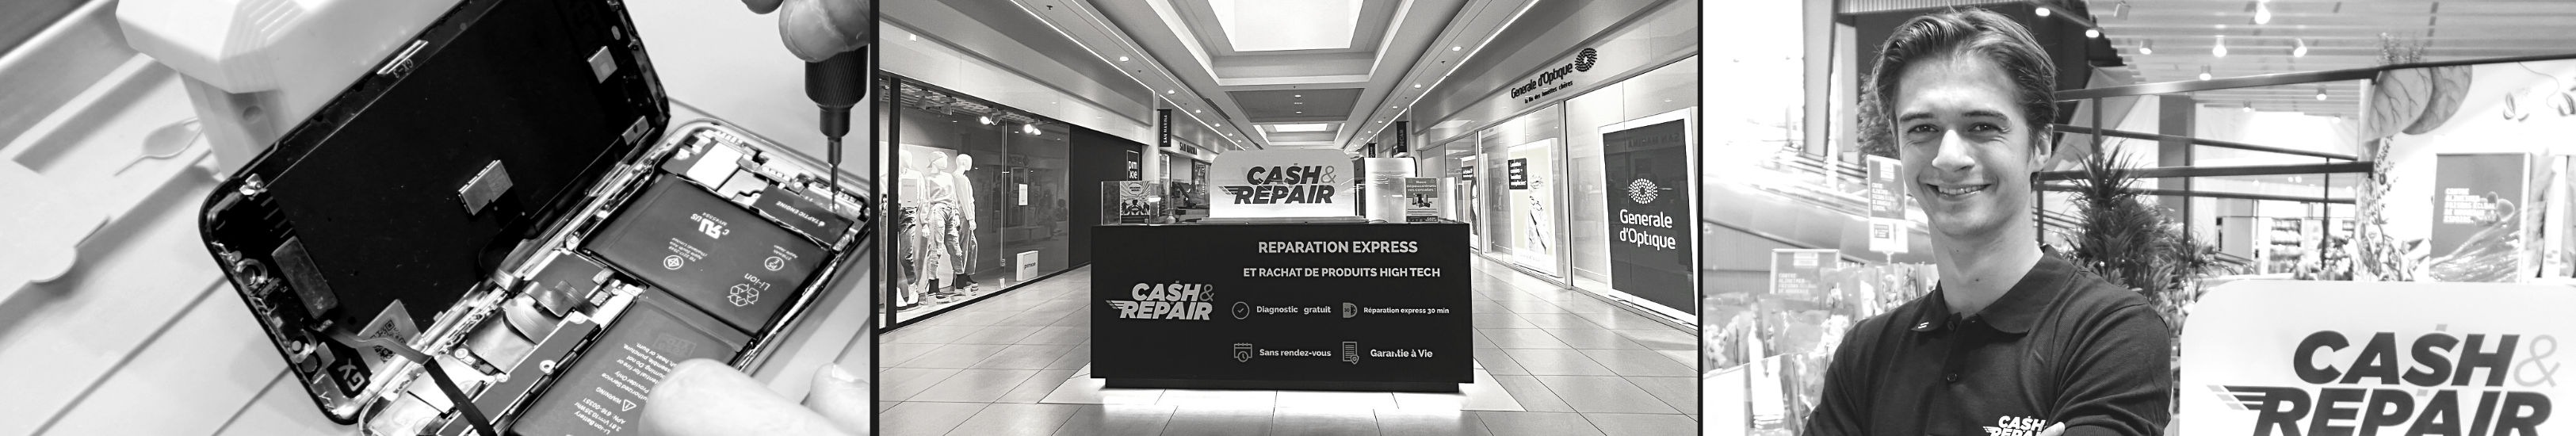 - Atelier de réparation Cash and Repair Clichy-sous-Bois